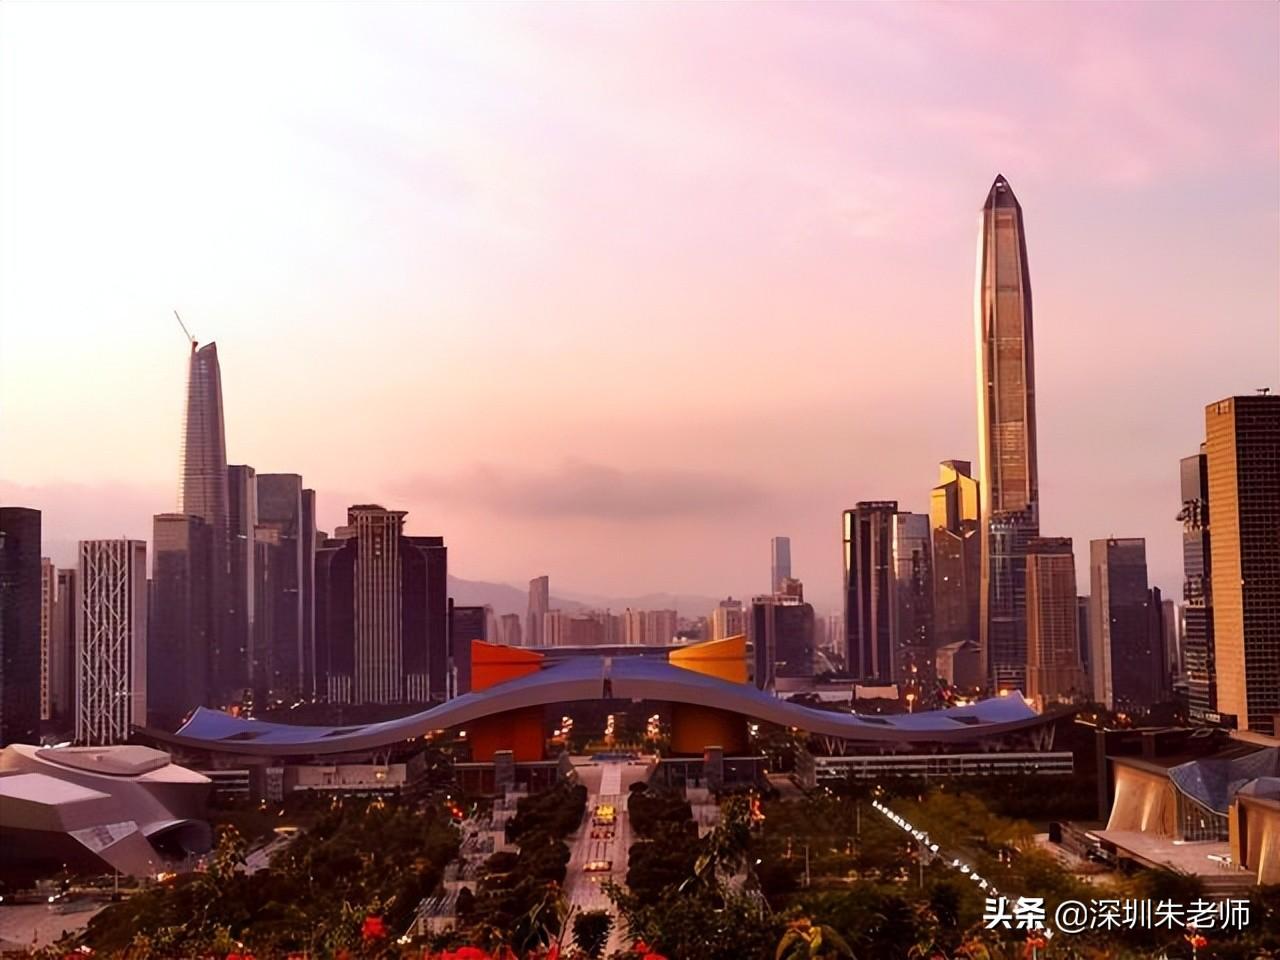 2022年深圳户口市内迁移转区好处与办理流程